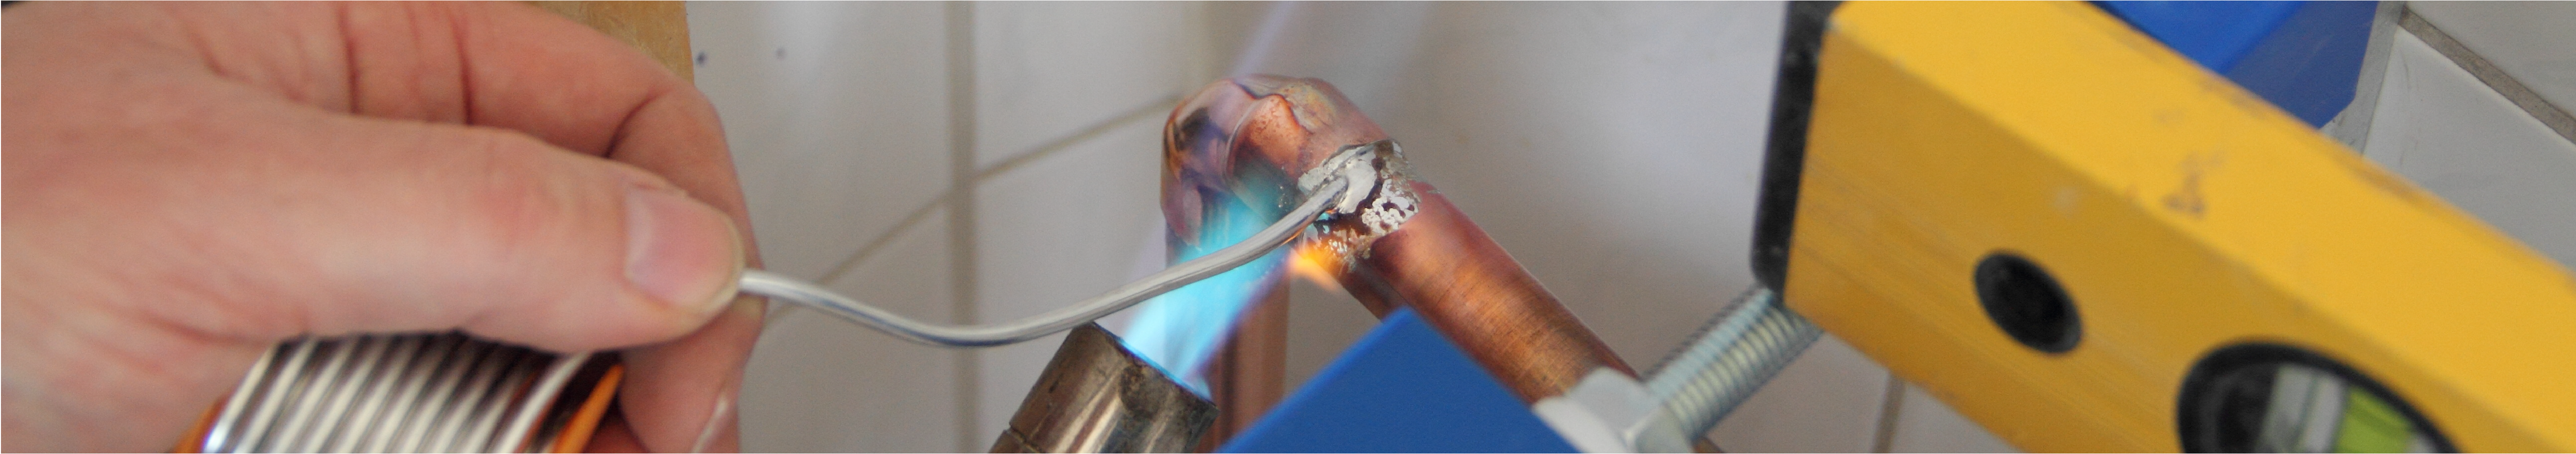 Foto: Das Bild zeigt wie ein Kupferrohr in einem gefliesten Badezimmer gelötet wird.
